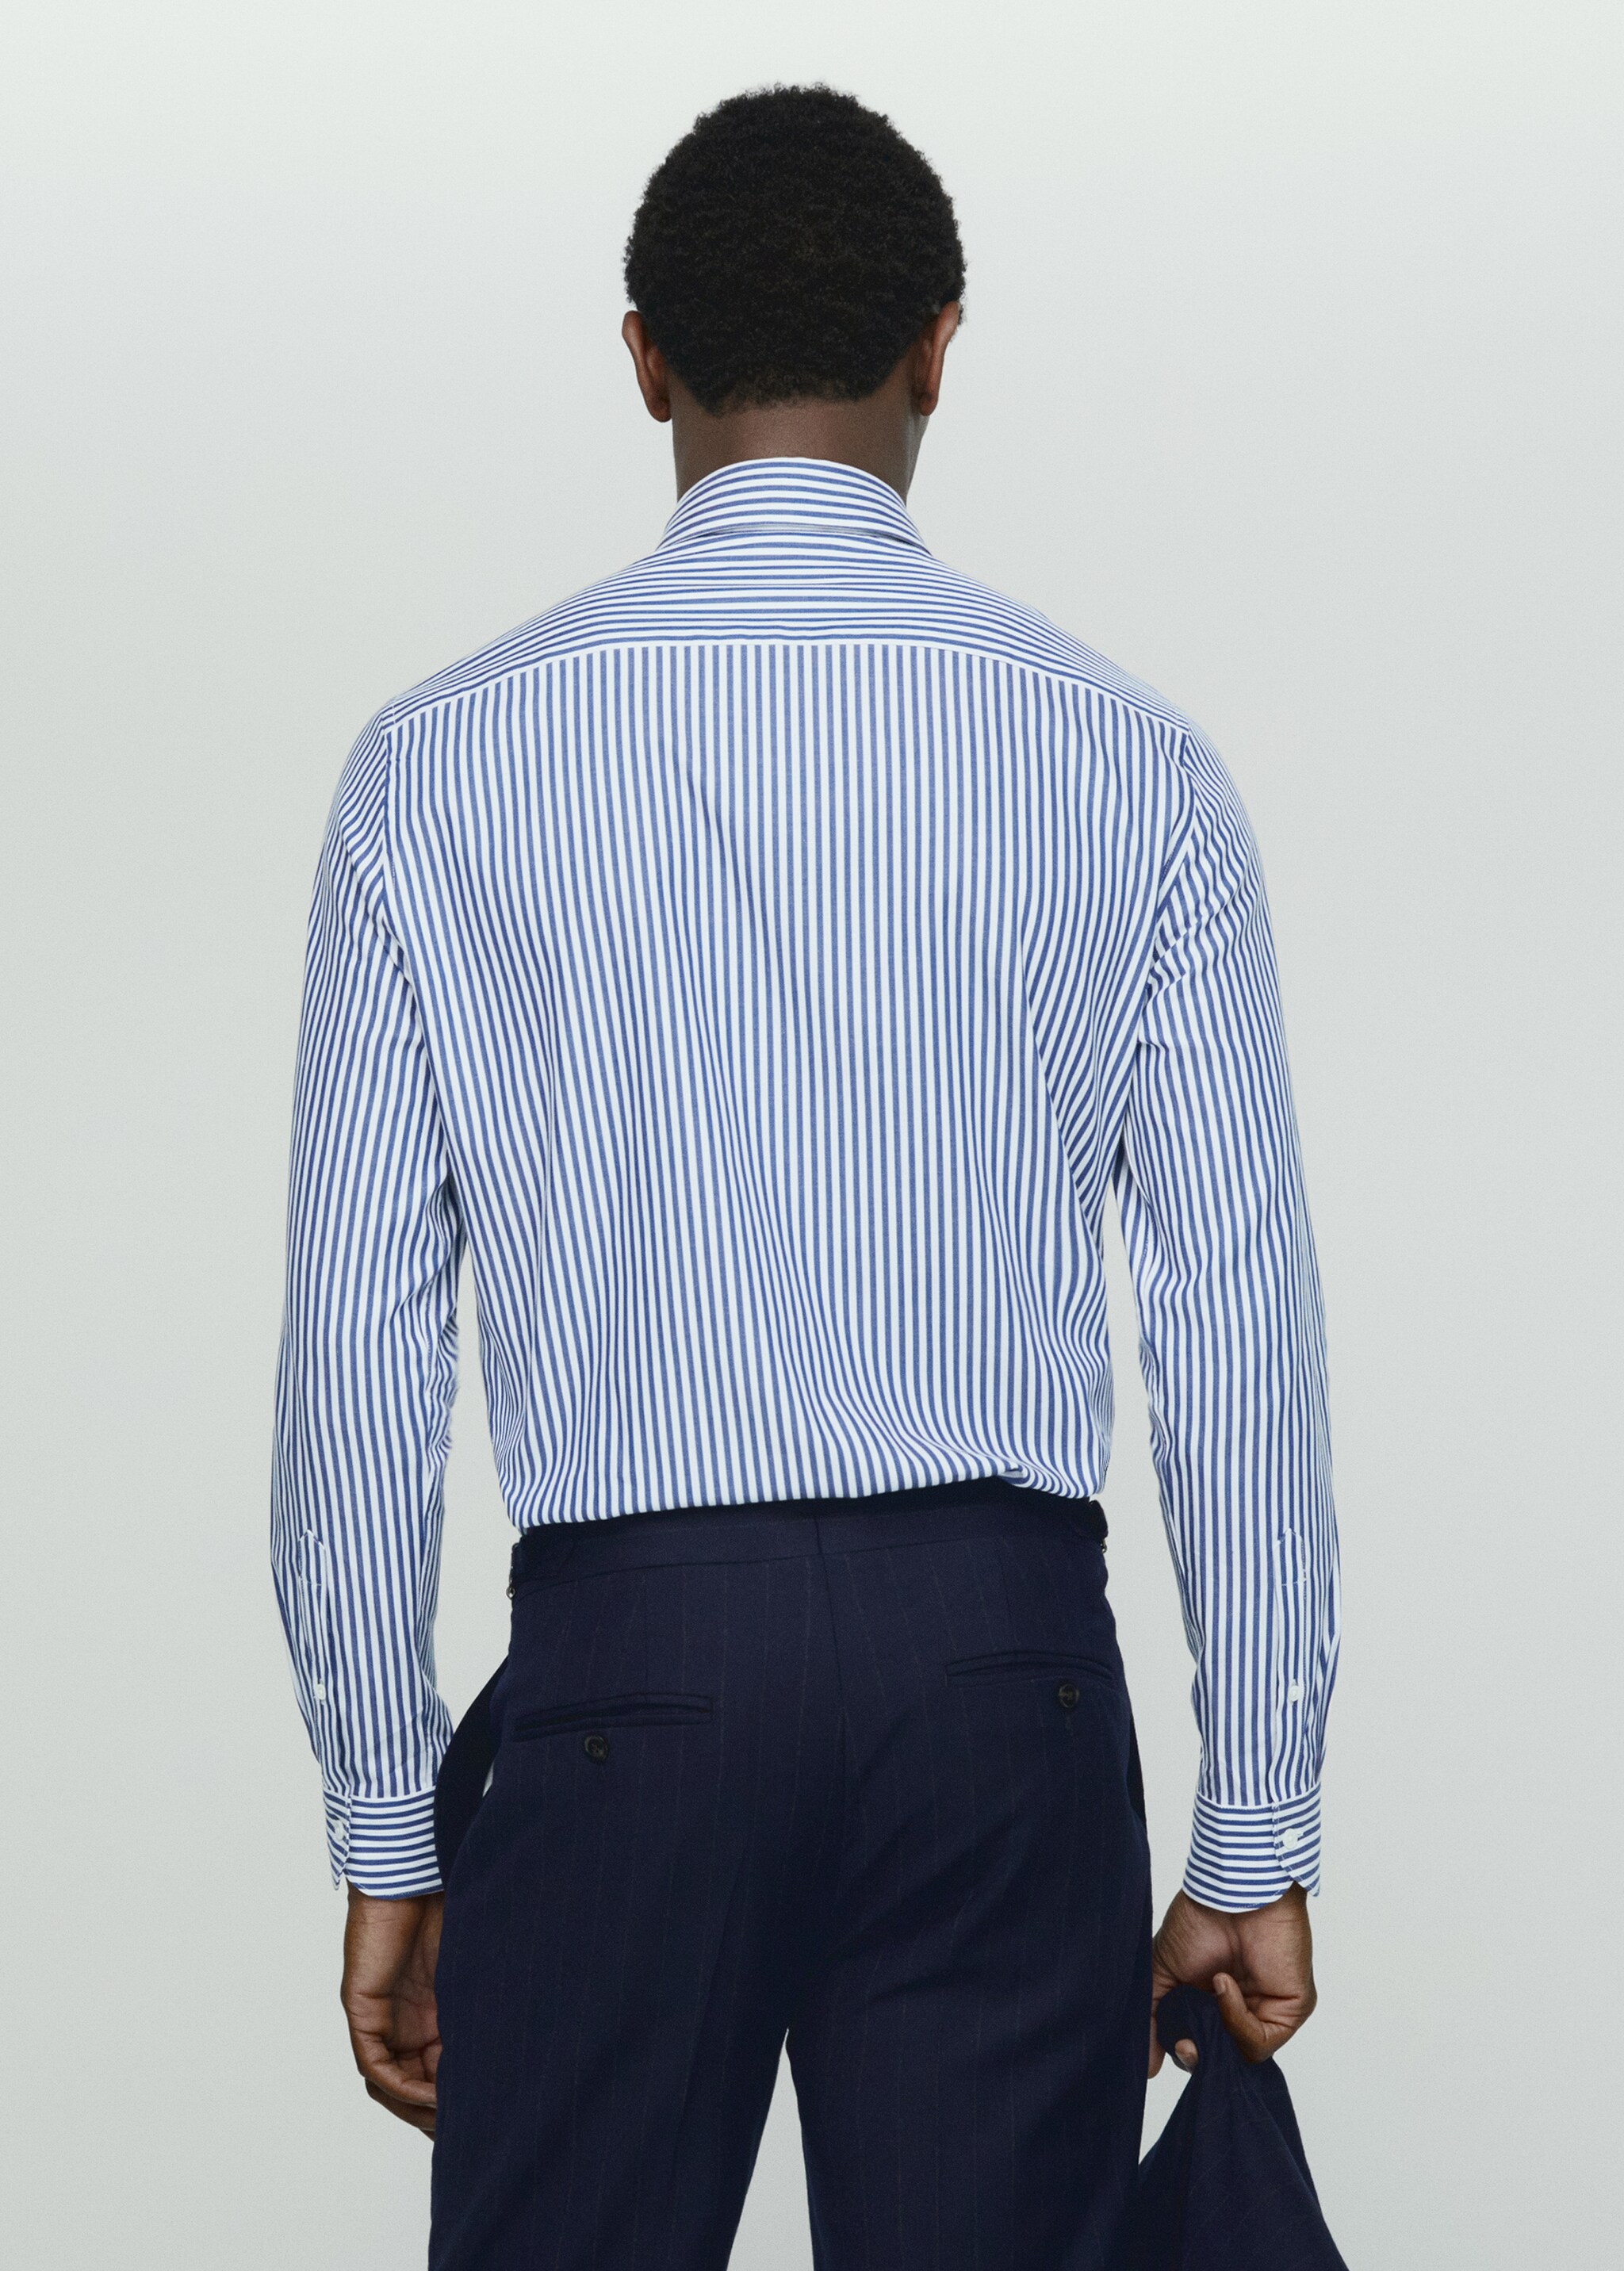 100% cotton striped shirt - Spatele articolului